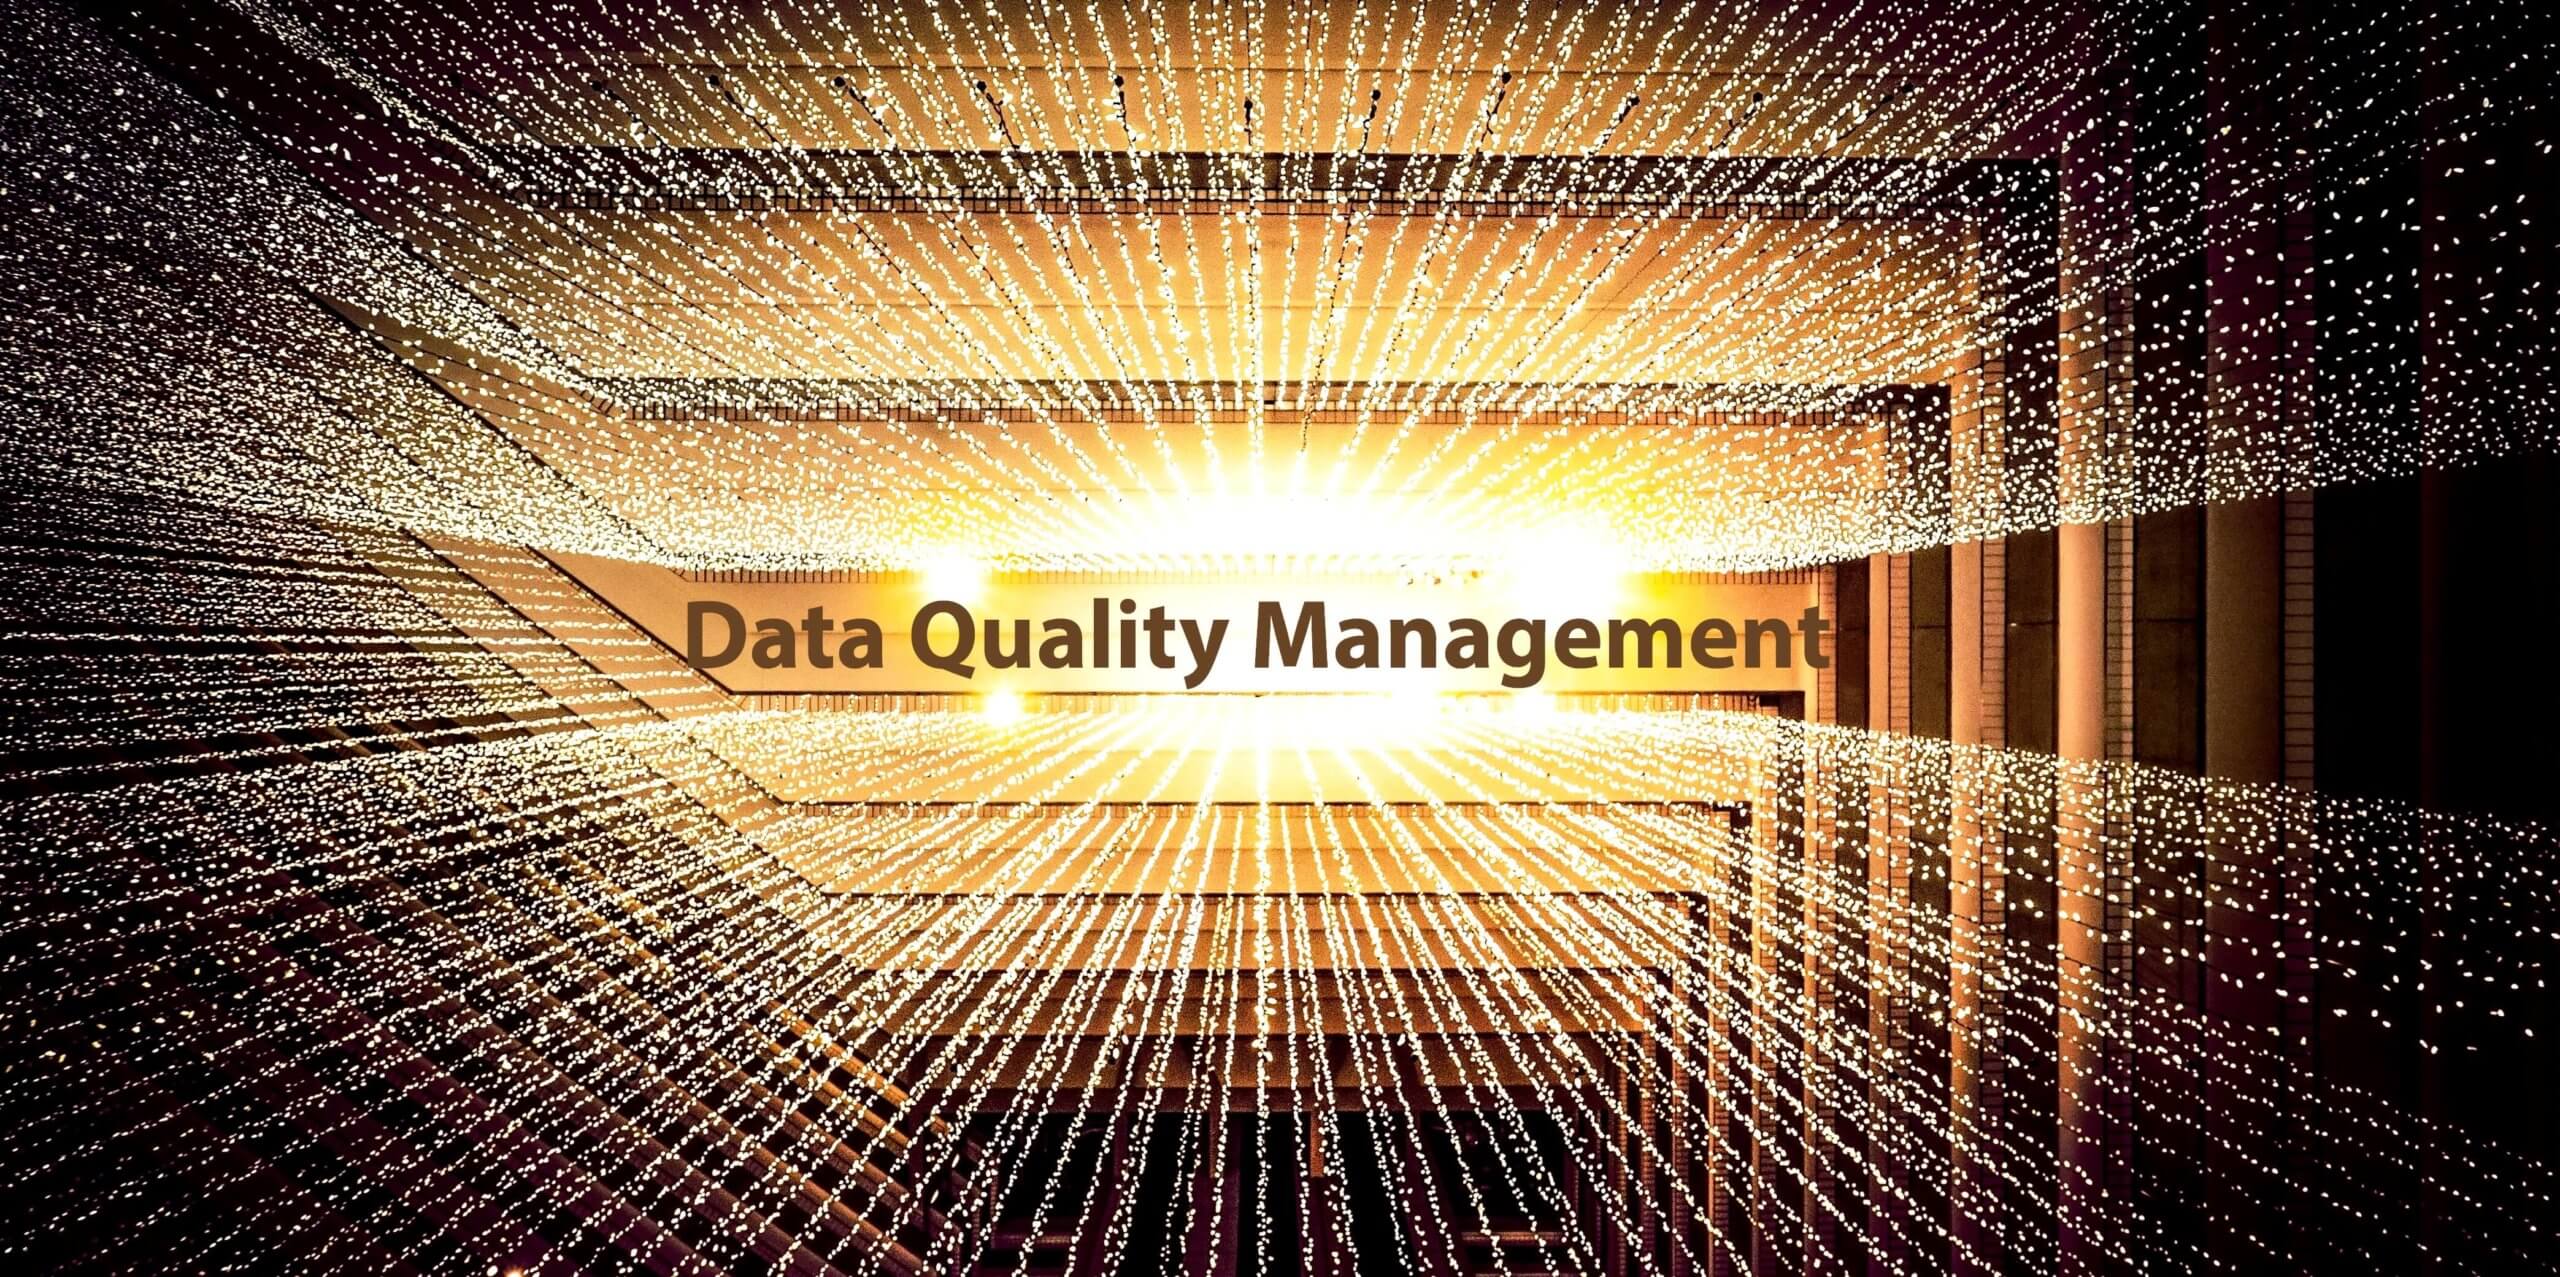 Datenqualität ist wichtiges Erfolgskriterium im Data Management